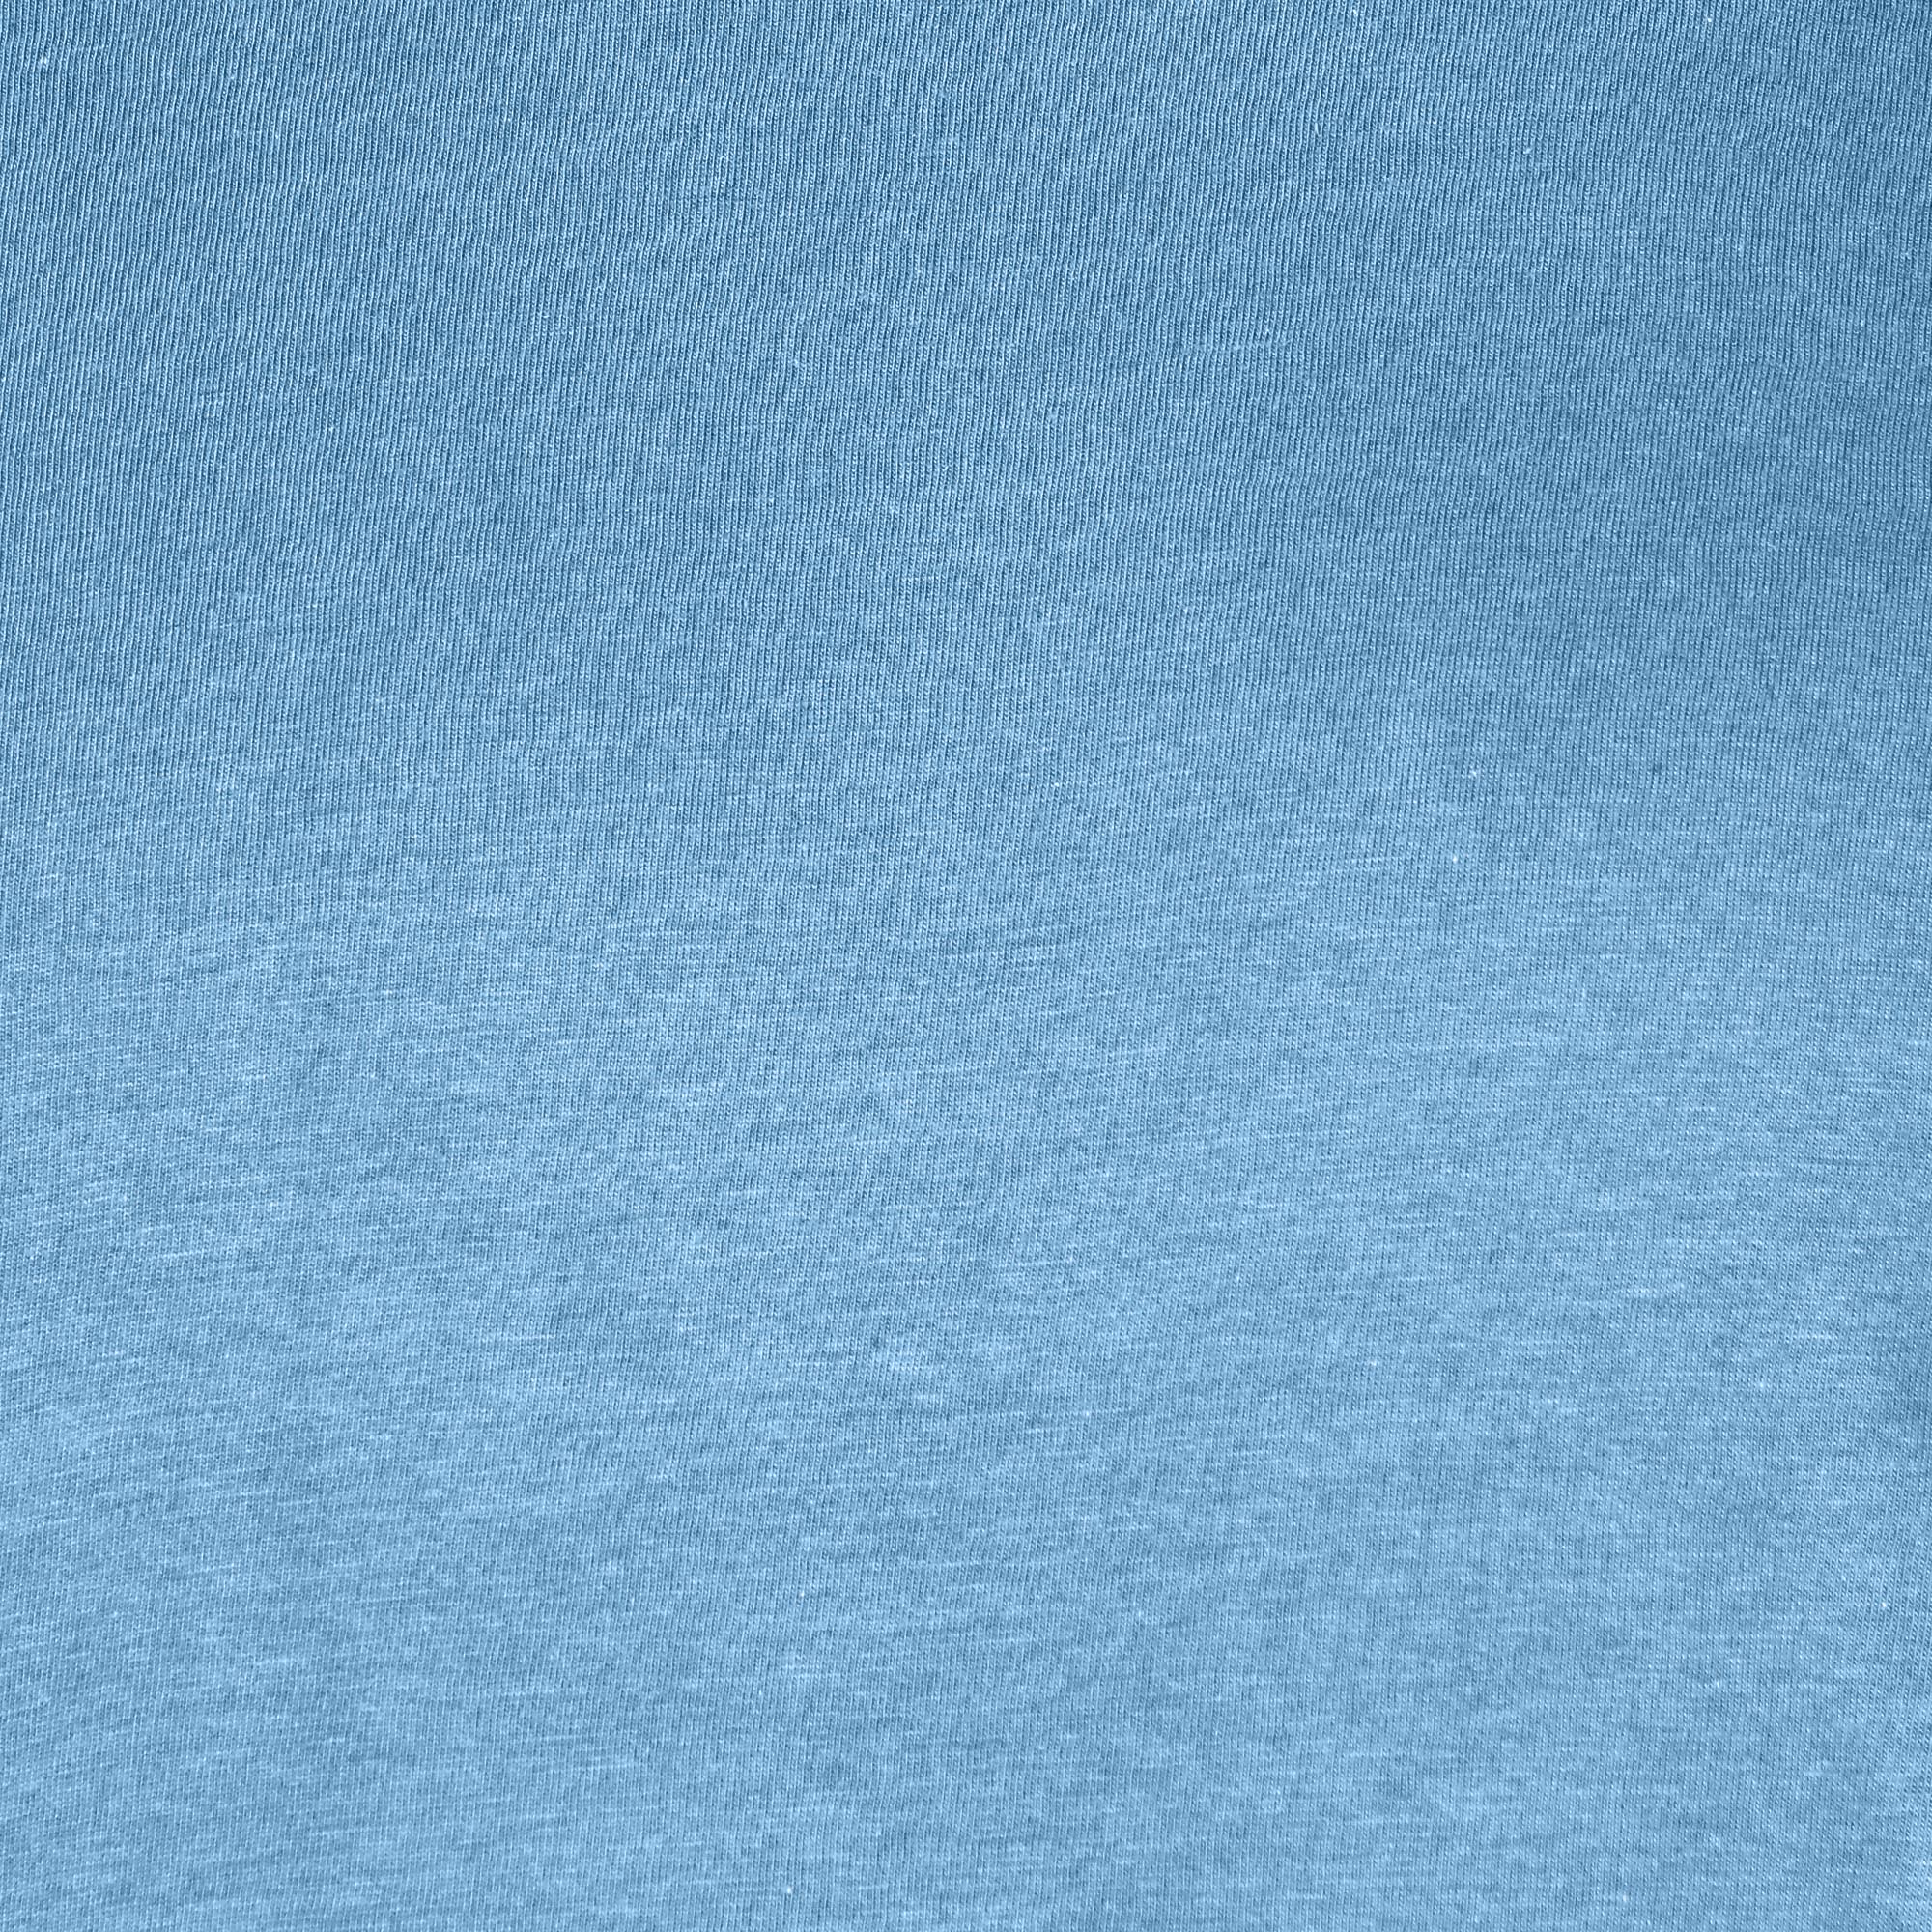 Мужская футболка Diva Teks голубая (DTD-03), цвет голубой, размер 52-54 - фото 5